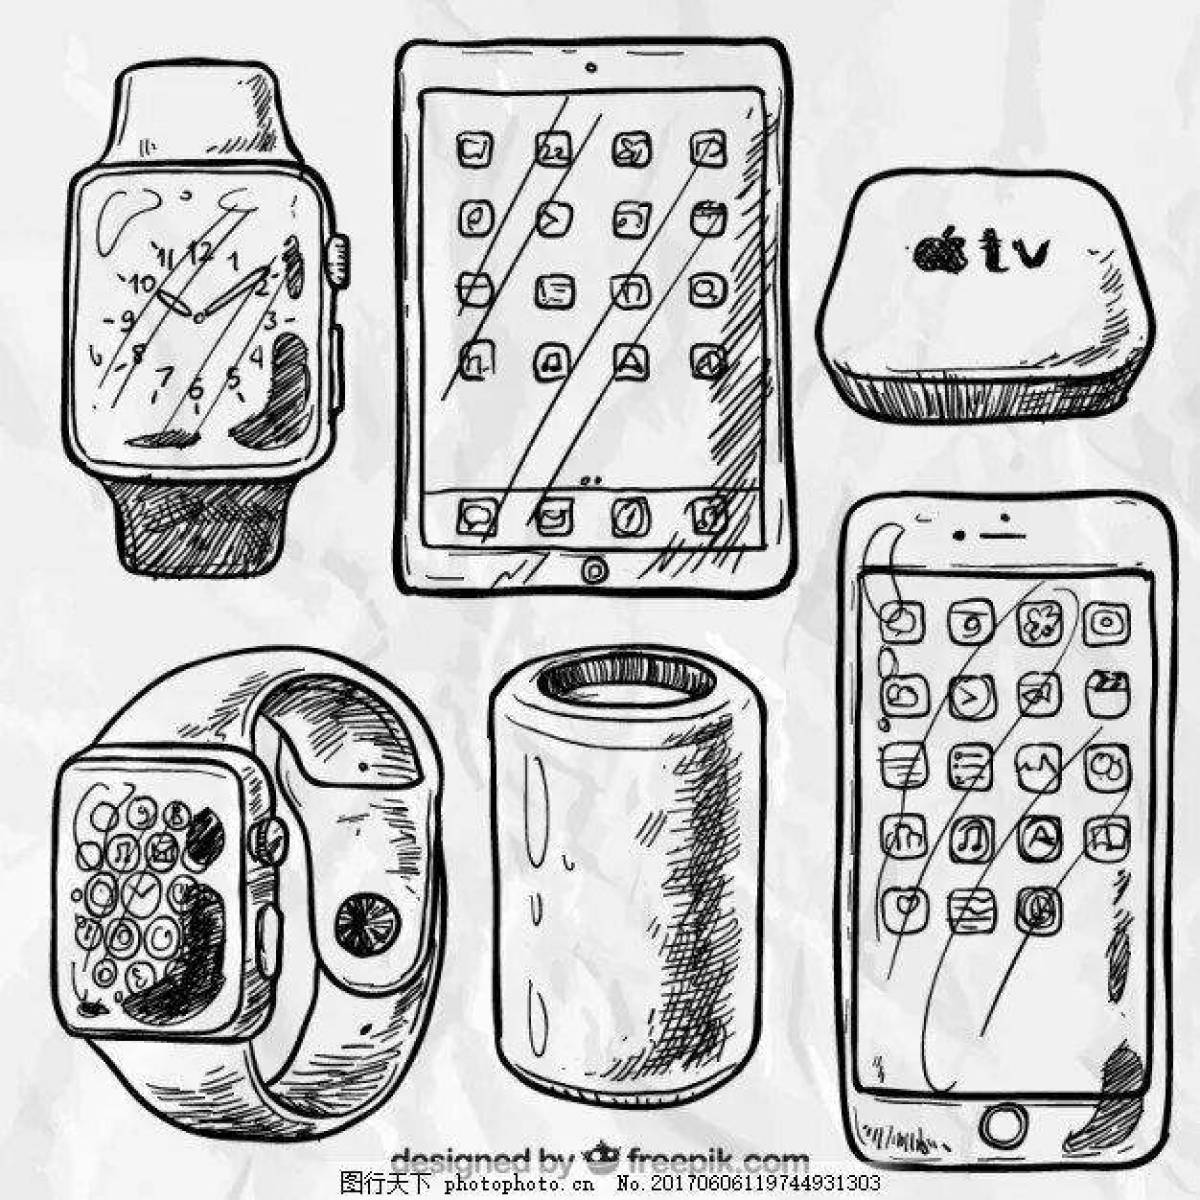 Gadgets #11